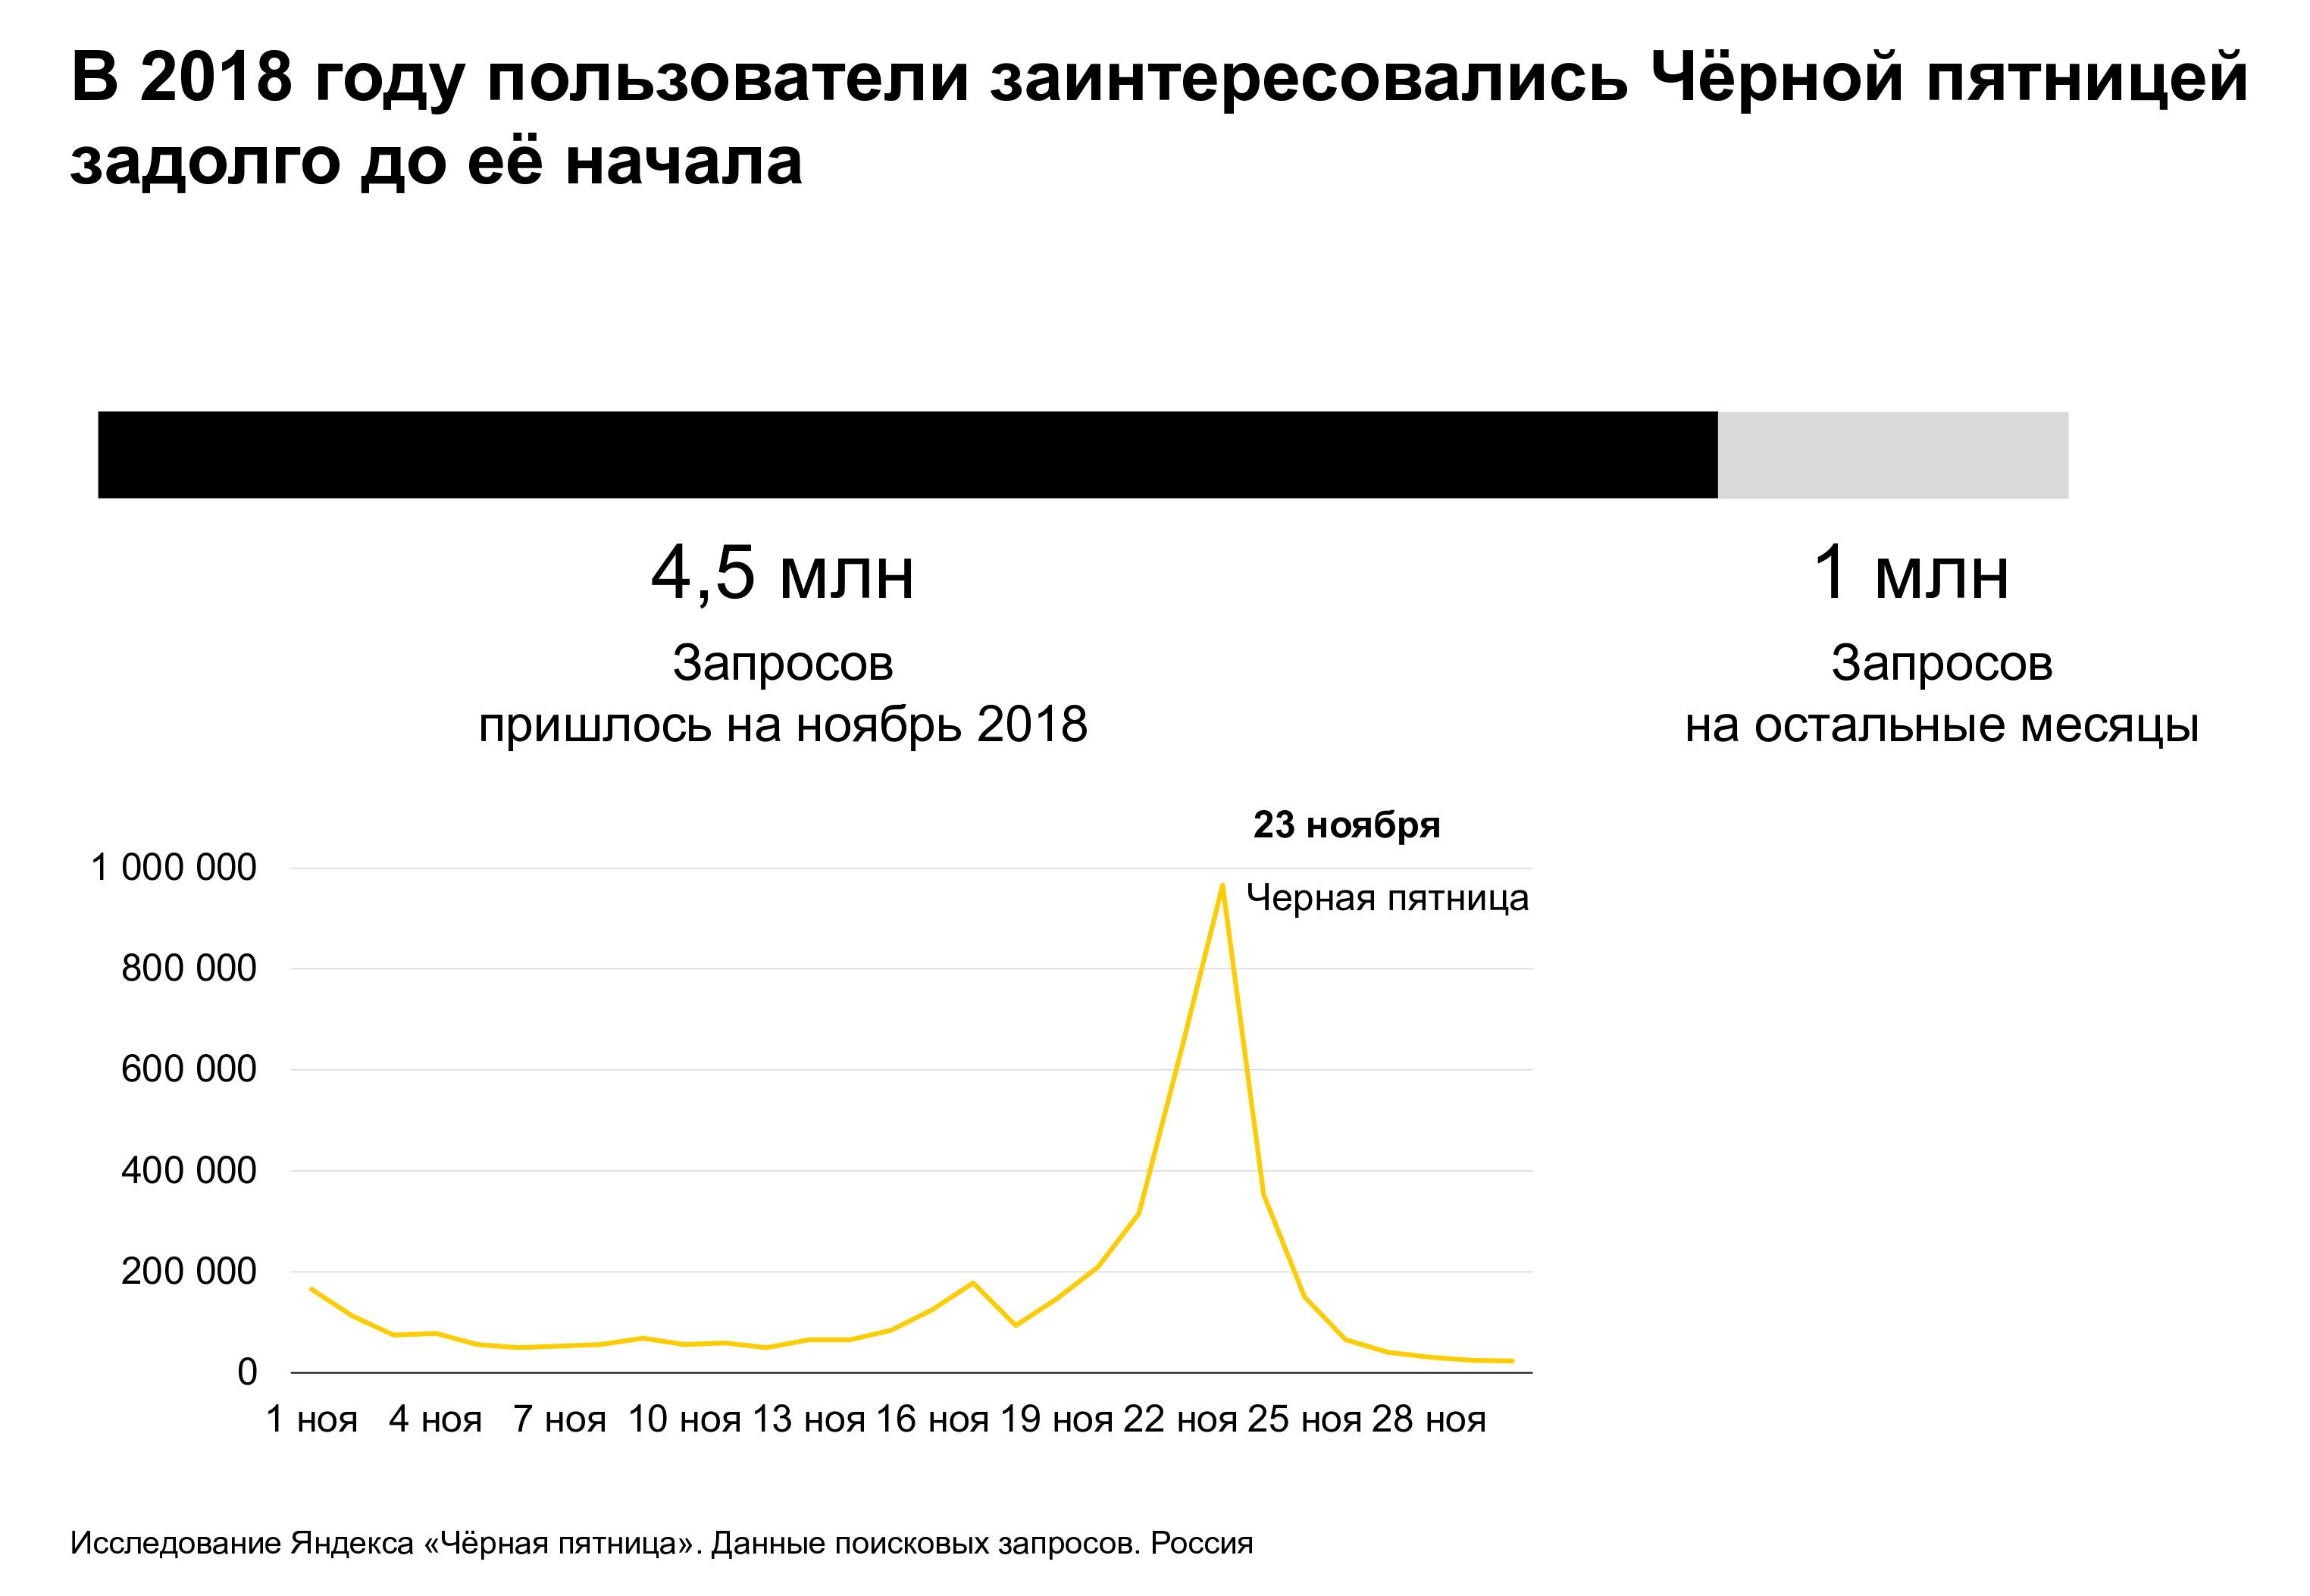 Яндекс: как прошла Чёрная пятница год назад и к чему готовиться сейчас